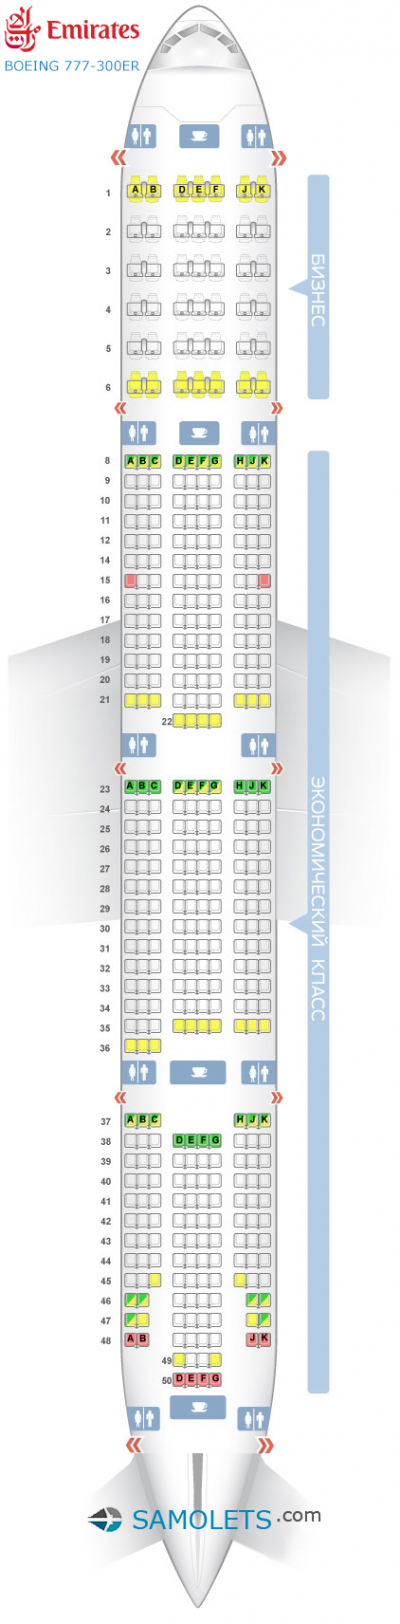 Схема салона Boeing 777-300ER - Emirates. Лучшие места